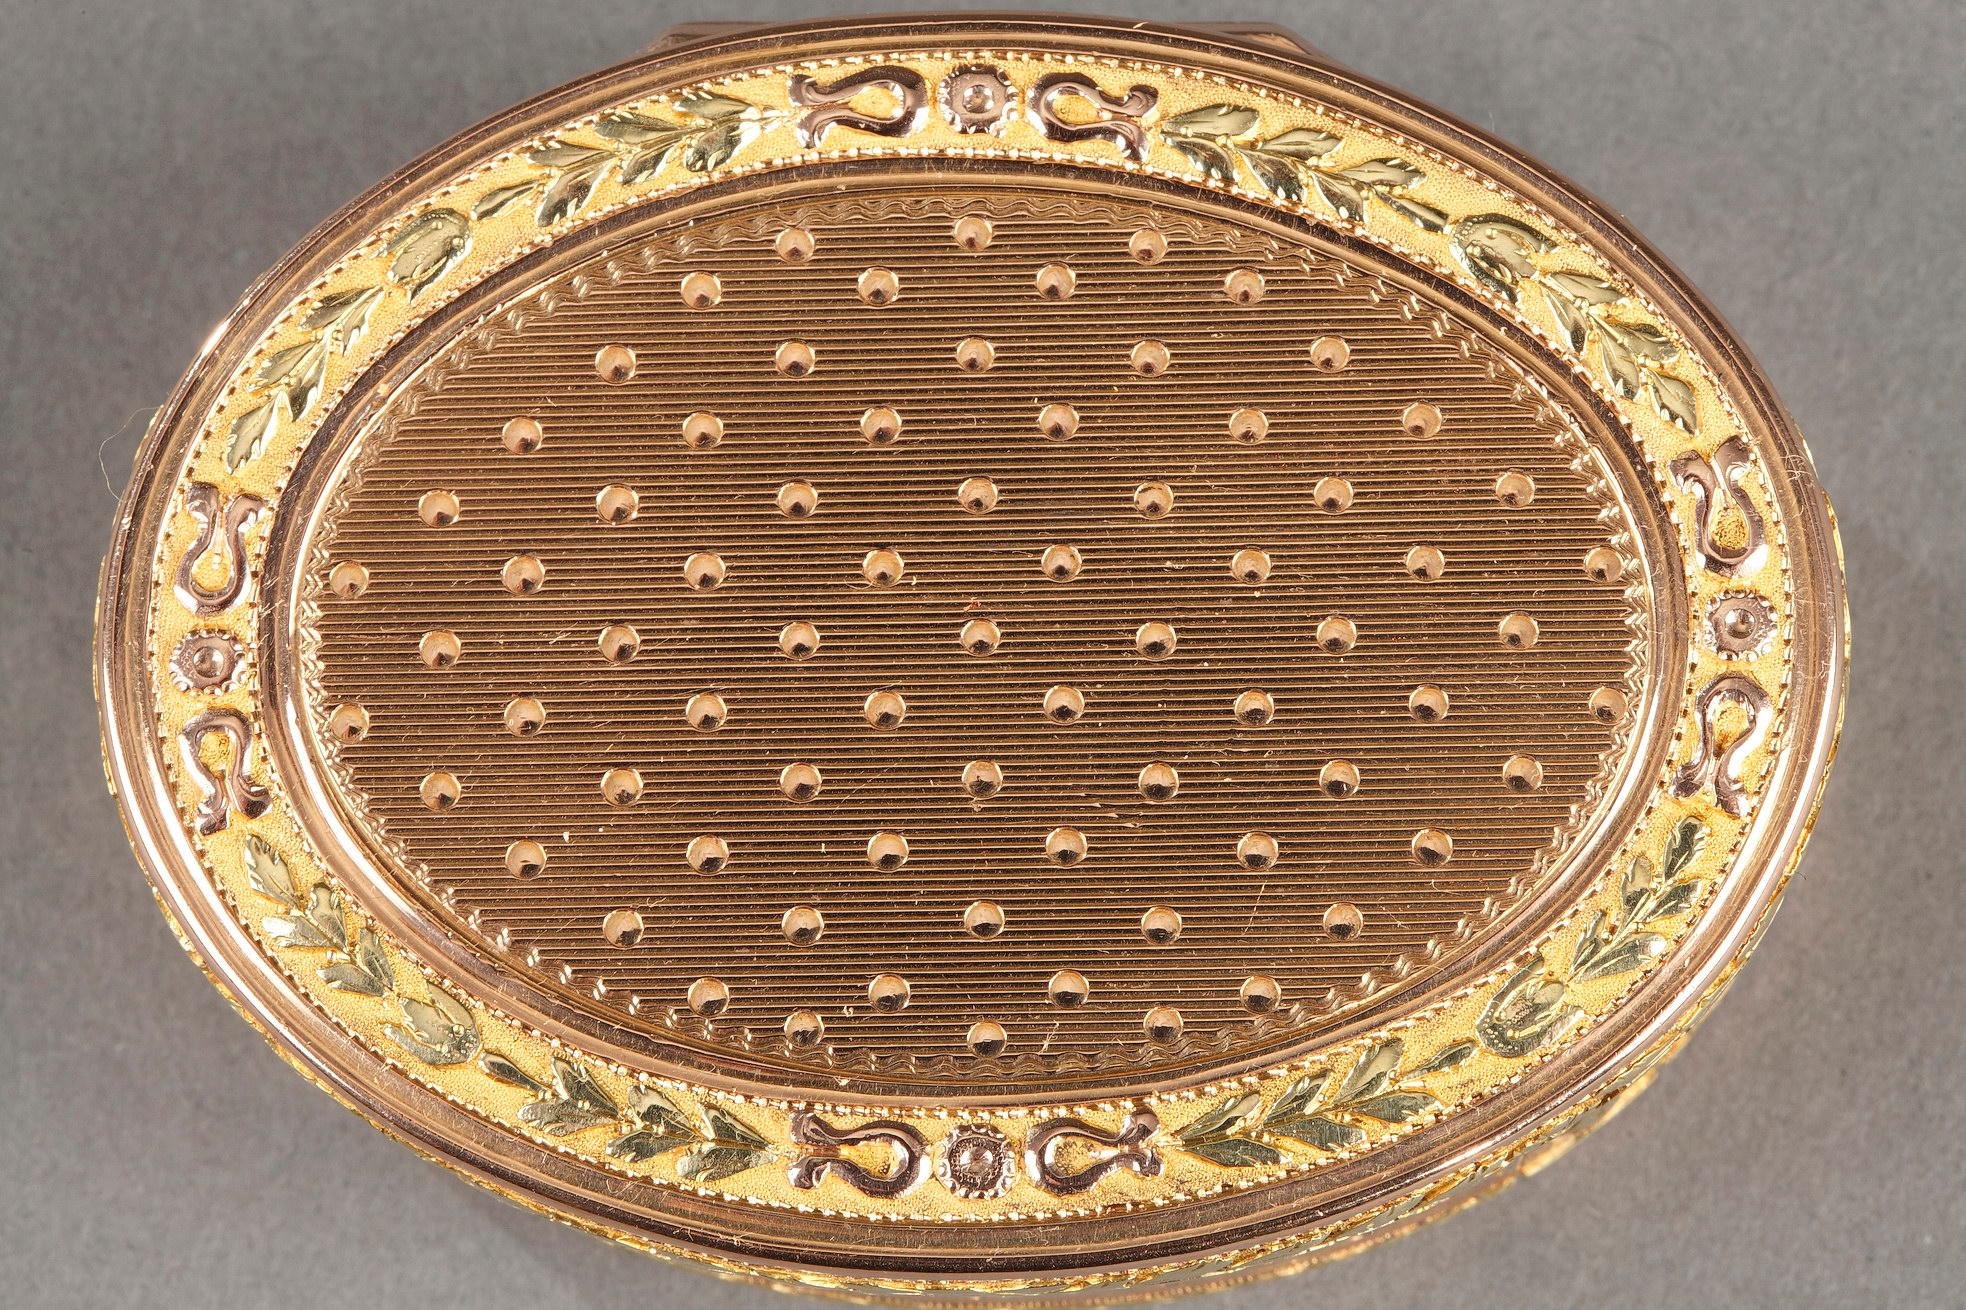 Ovale Dose oder Schnupftabakdose aus Gold in verschiedenen Farbtönen. Die Schnupftabakdose ist mit einem guillochierten Muster aus parallelen Streifen und Punkten auf dem Deckel, der Seite und dem Boden verziert. Der Rand ist mit einem stilisierten